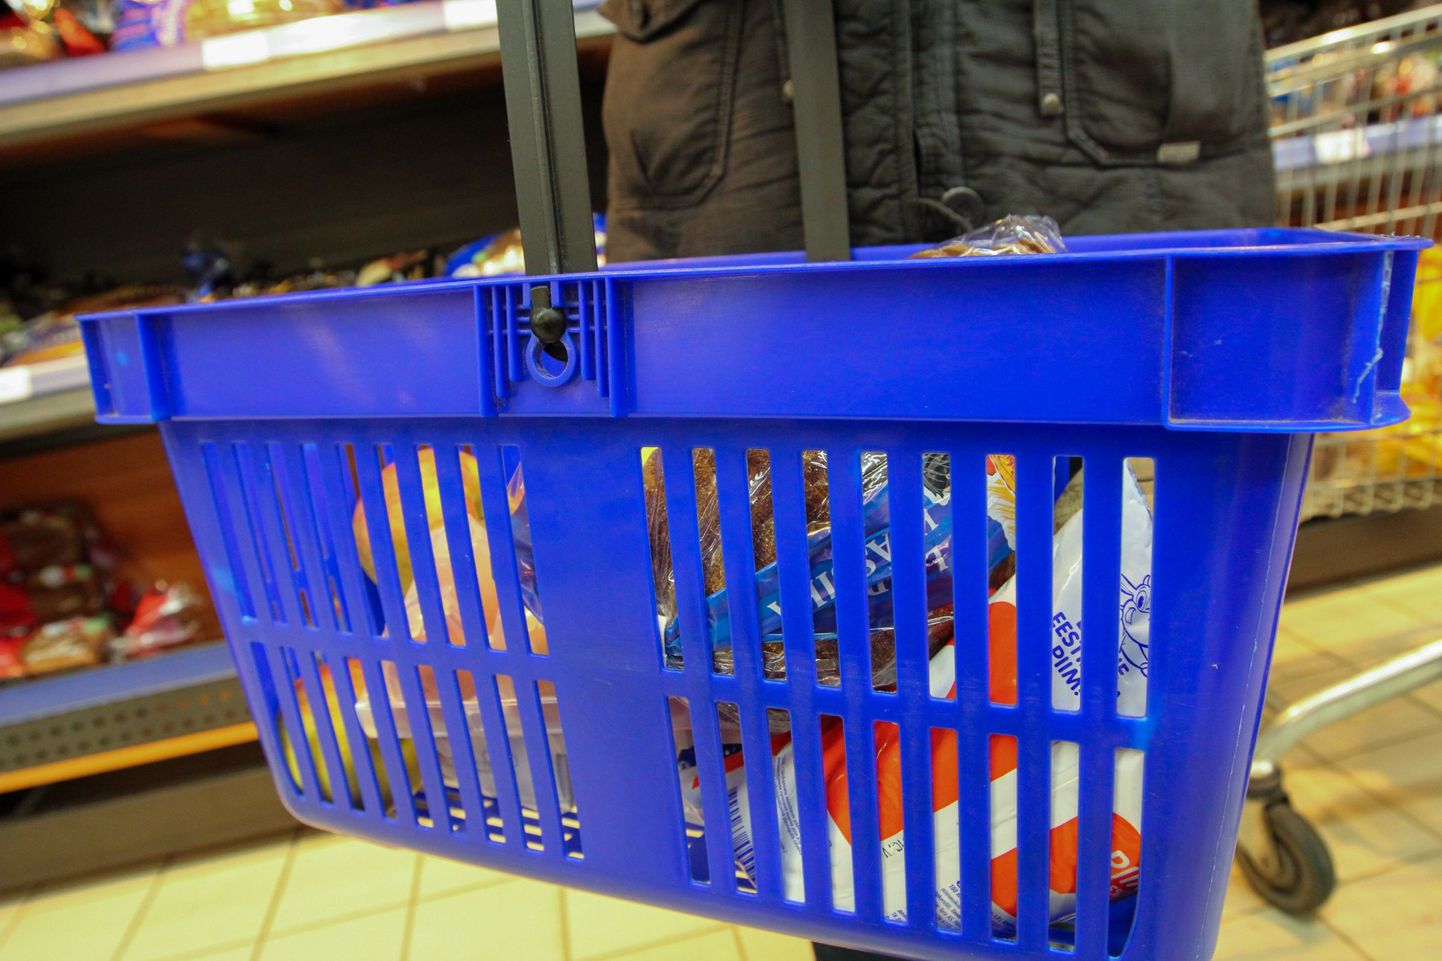 Valga, 18.01.2013
Toidukorv, ostukorv, toidukaubad, kaup, tooted, ostmine.
Foto: Arvo Meeks/Valgamaalane